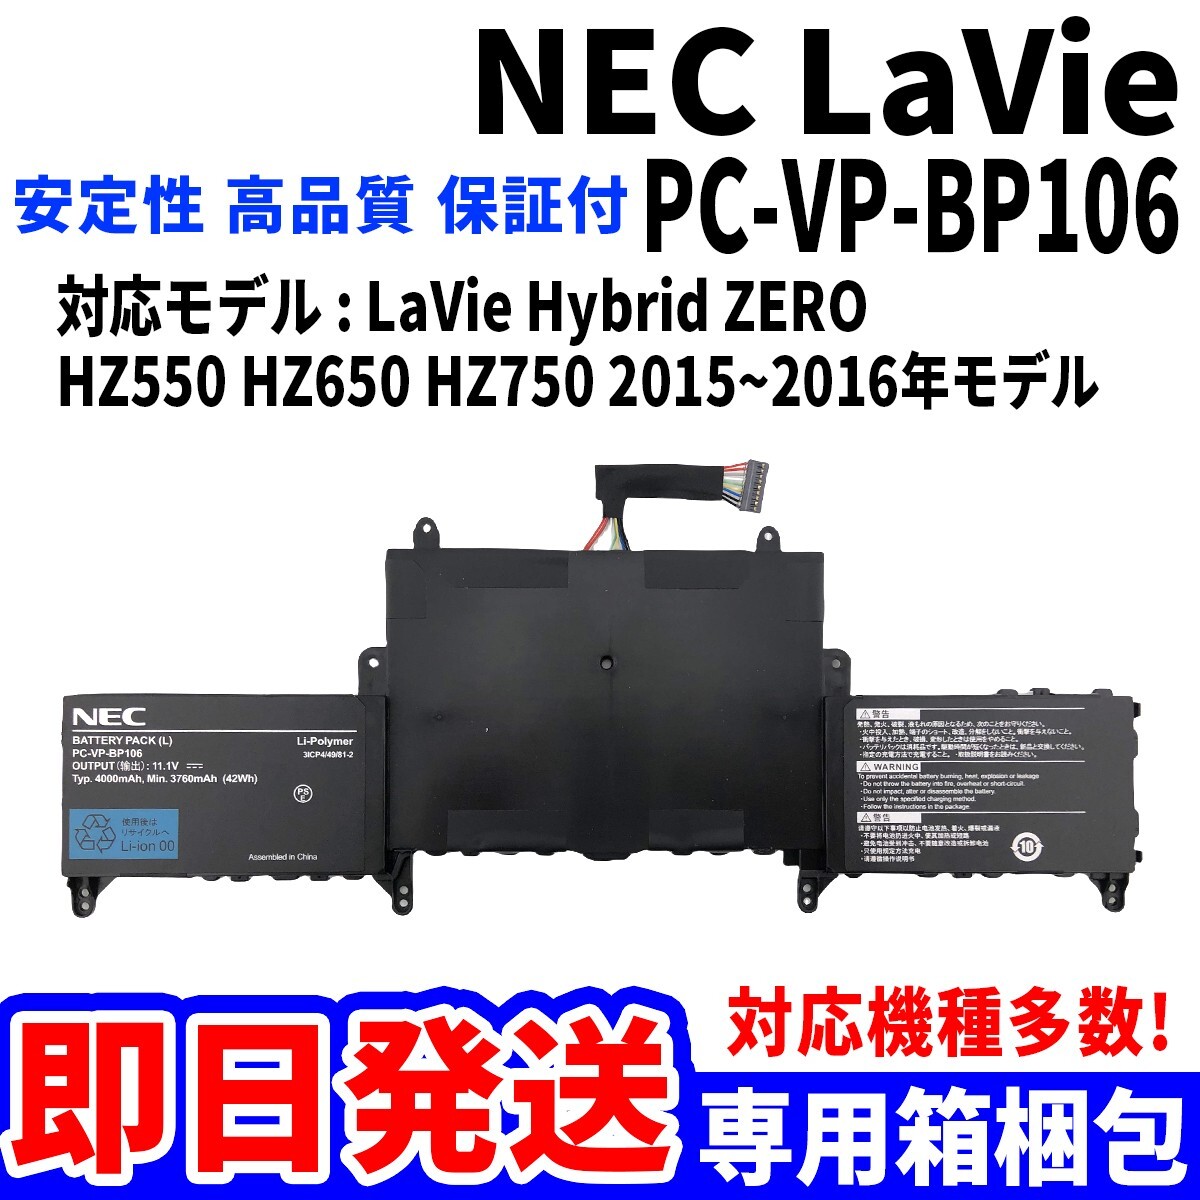 新品! NEC LaVie PC-VP-BP106 Hybrid ZERO 2015 2016 HZ550 HZ650 HZ750 バッテリー 電池パック交換 パソコン 内蔵battery 単品_画像1